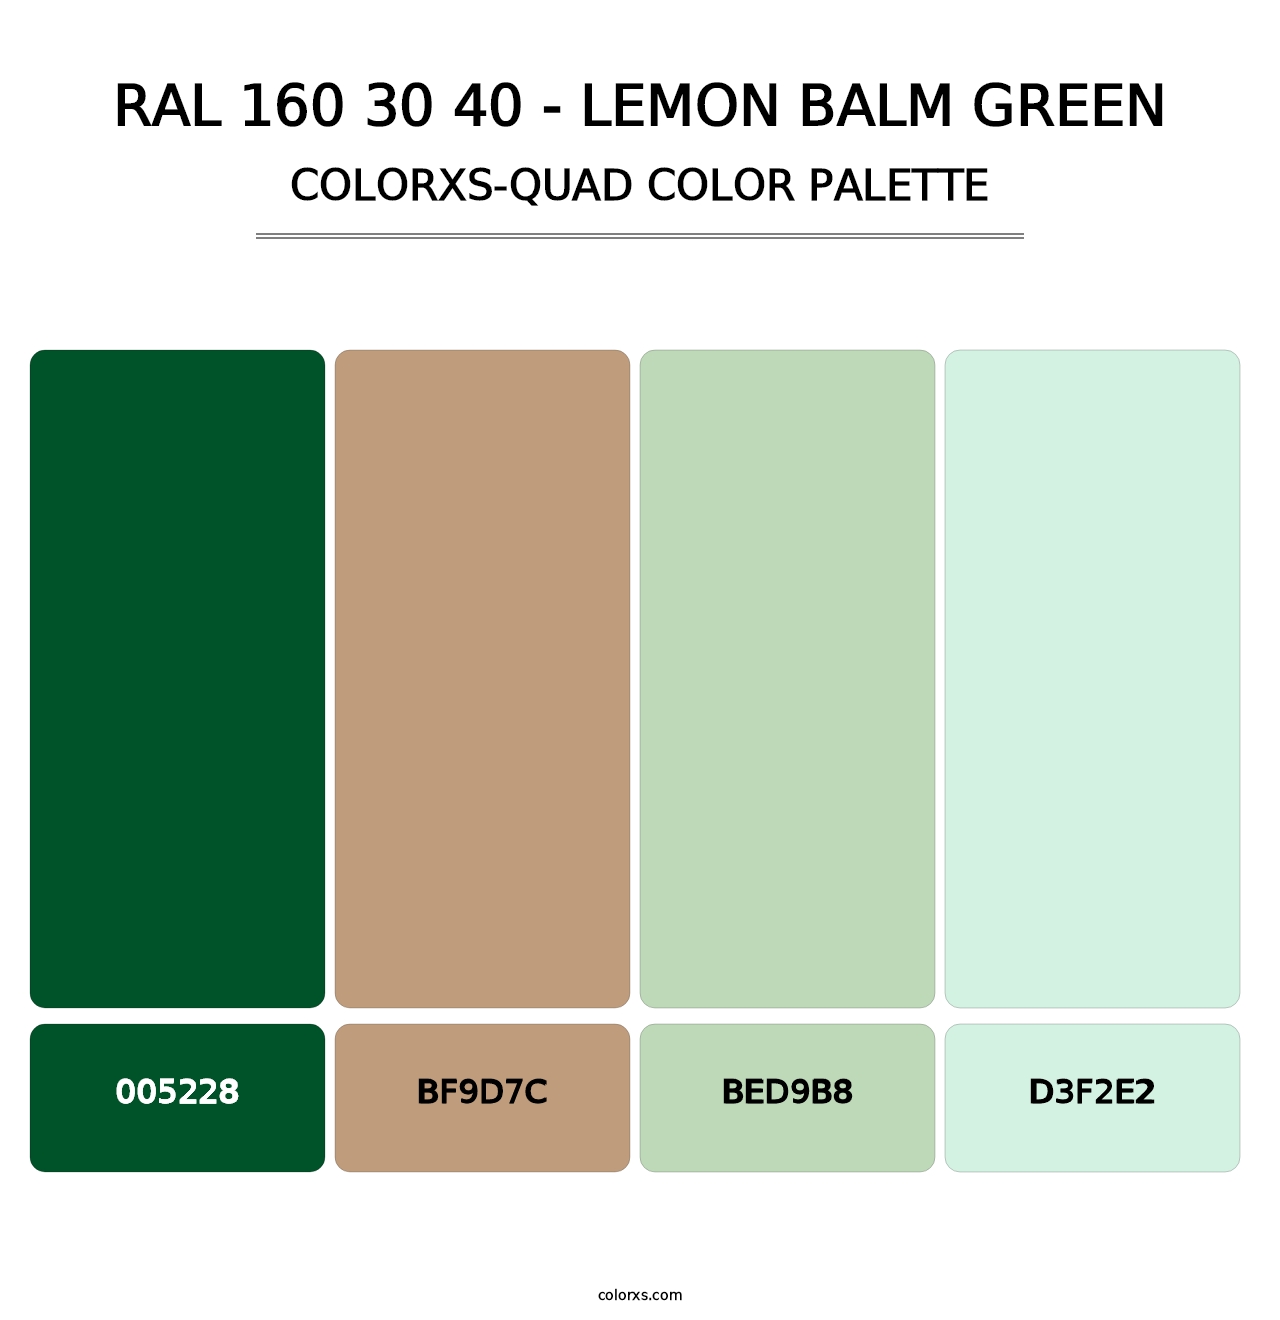 RAL 160 30 40 - Lemon Balm Green - Colorxs Quad Palette